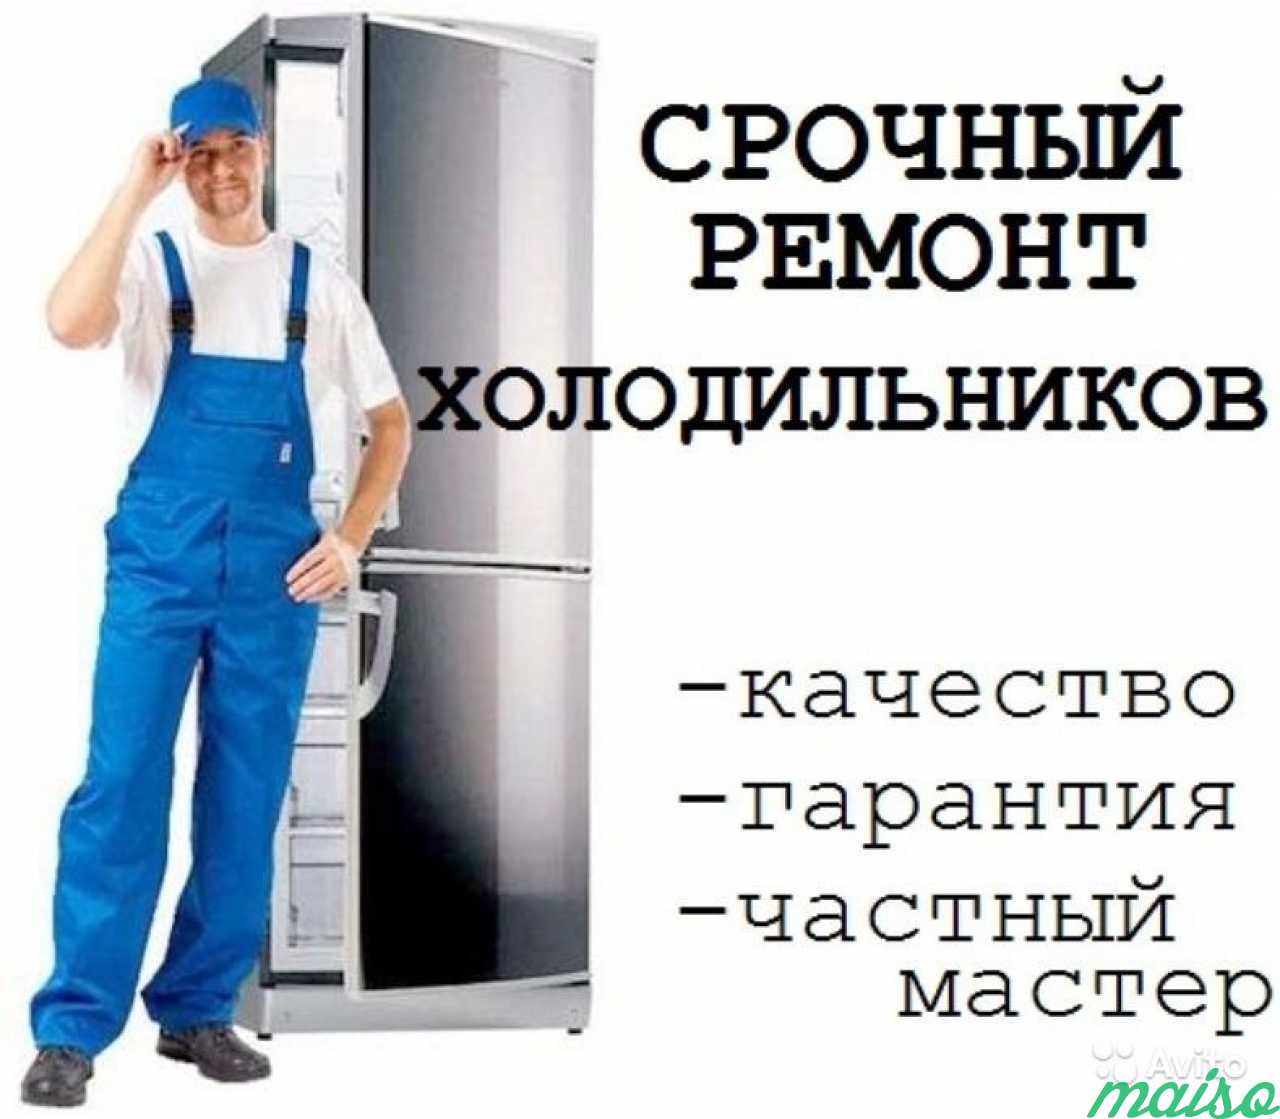 Ремонт холодильников на дому ростов на дону. Мастер холодильников. Ремонт холодильников реклама. Мастер по ремонту холодильников.